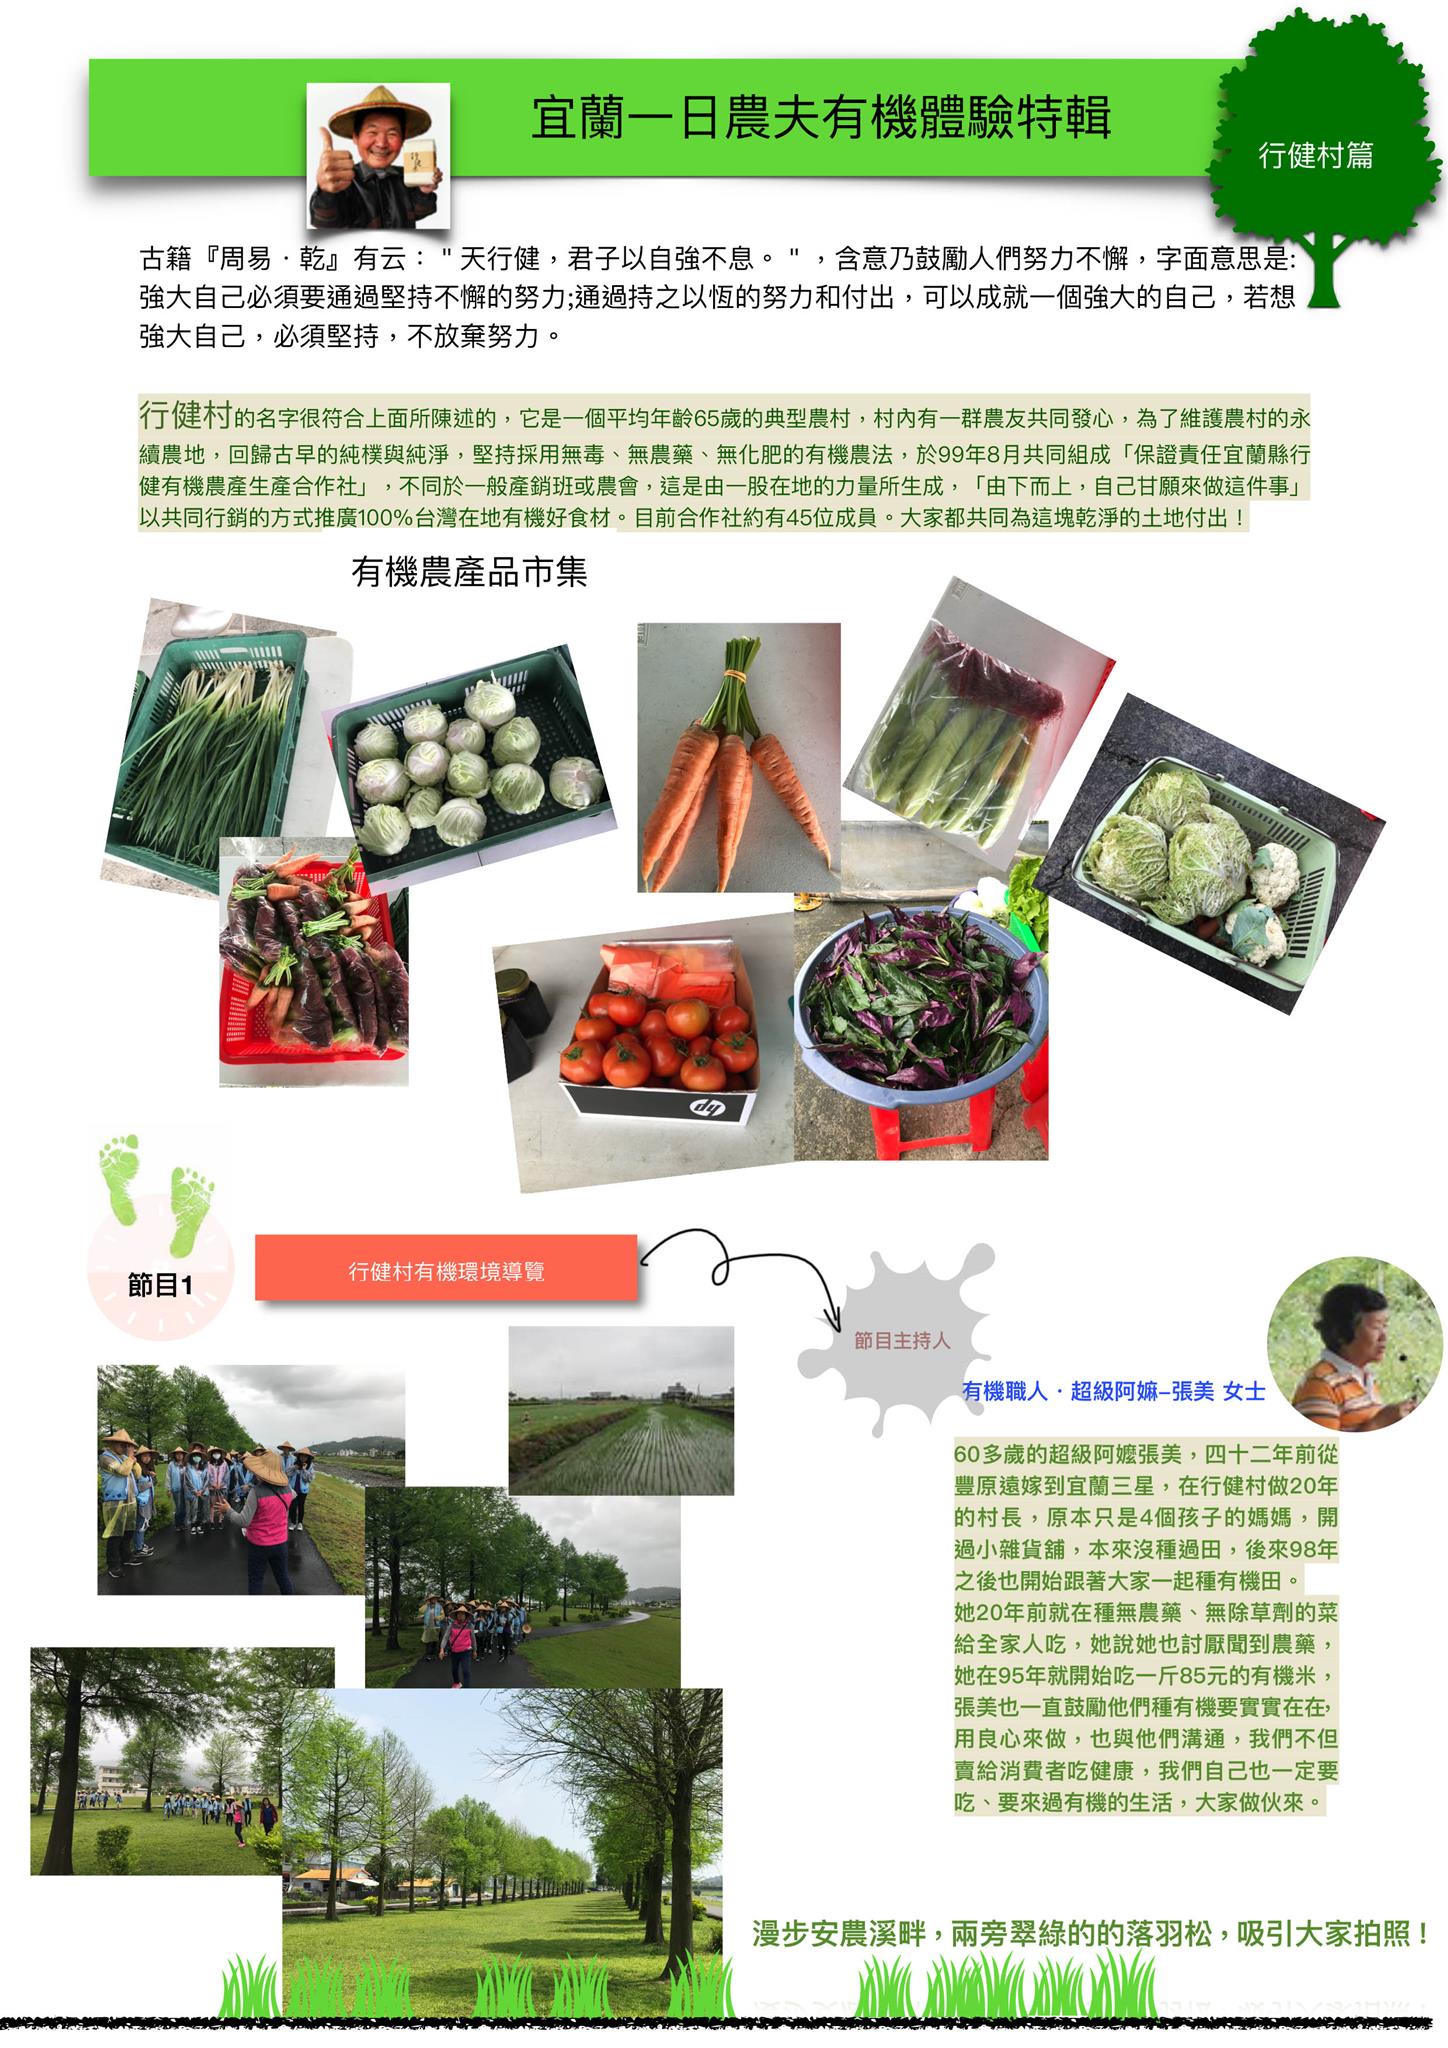 中華民國有機生活環境教育推廣協會 行健村一日農夫